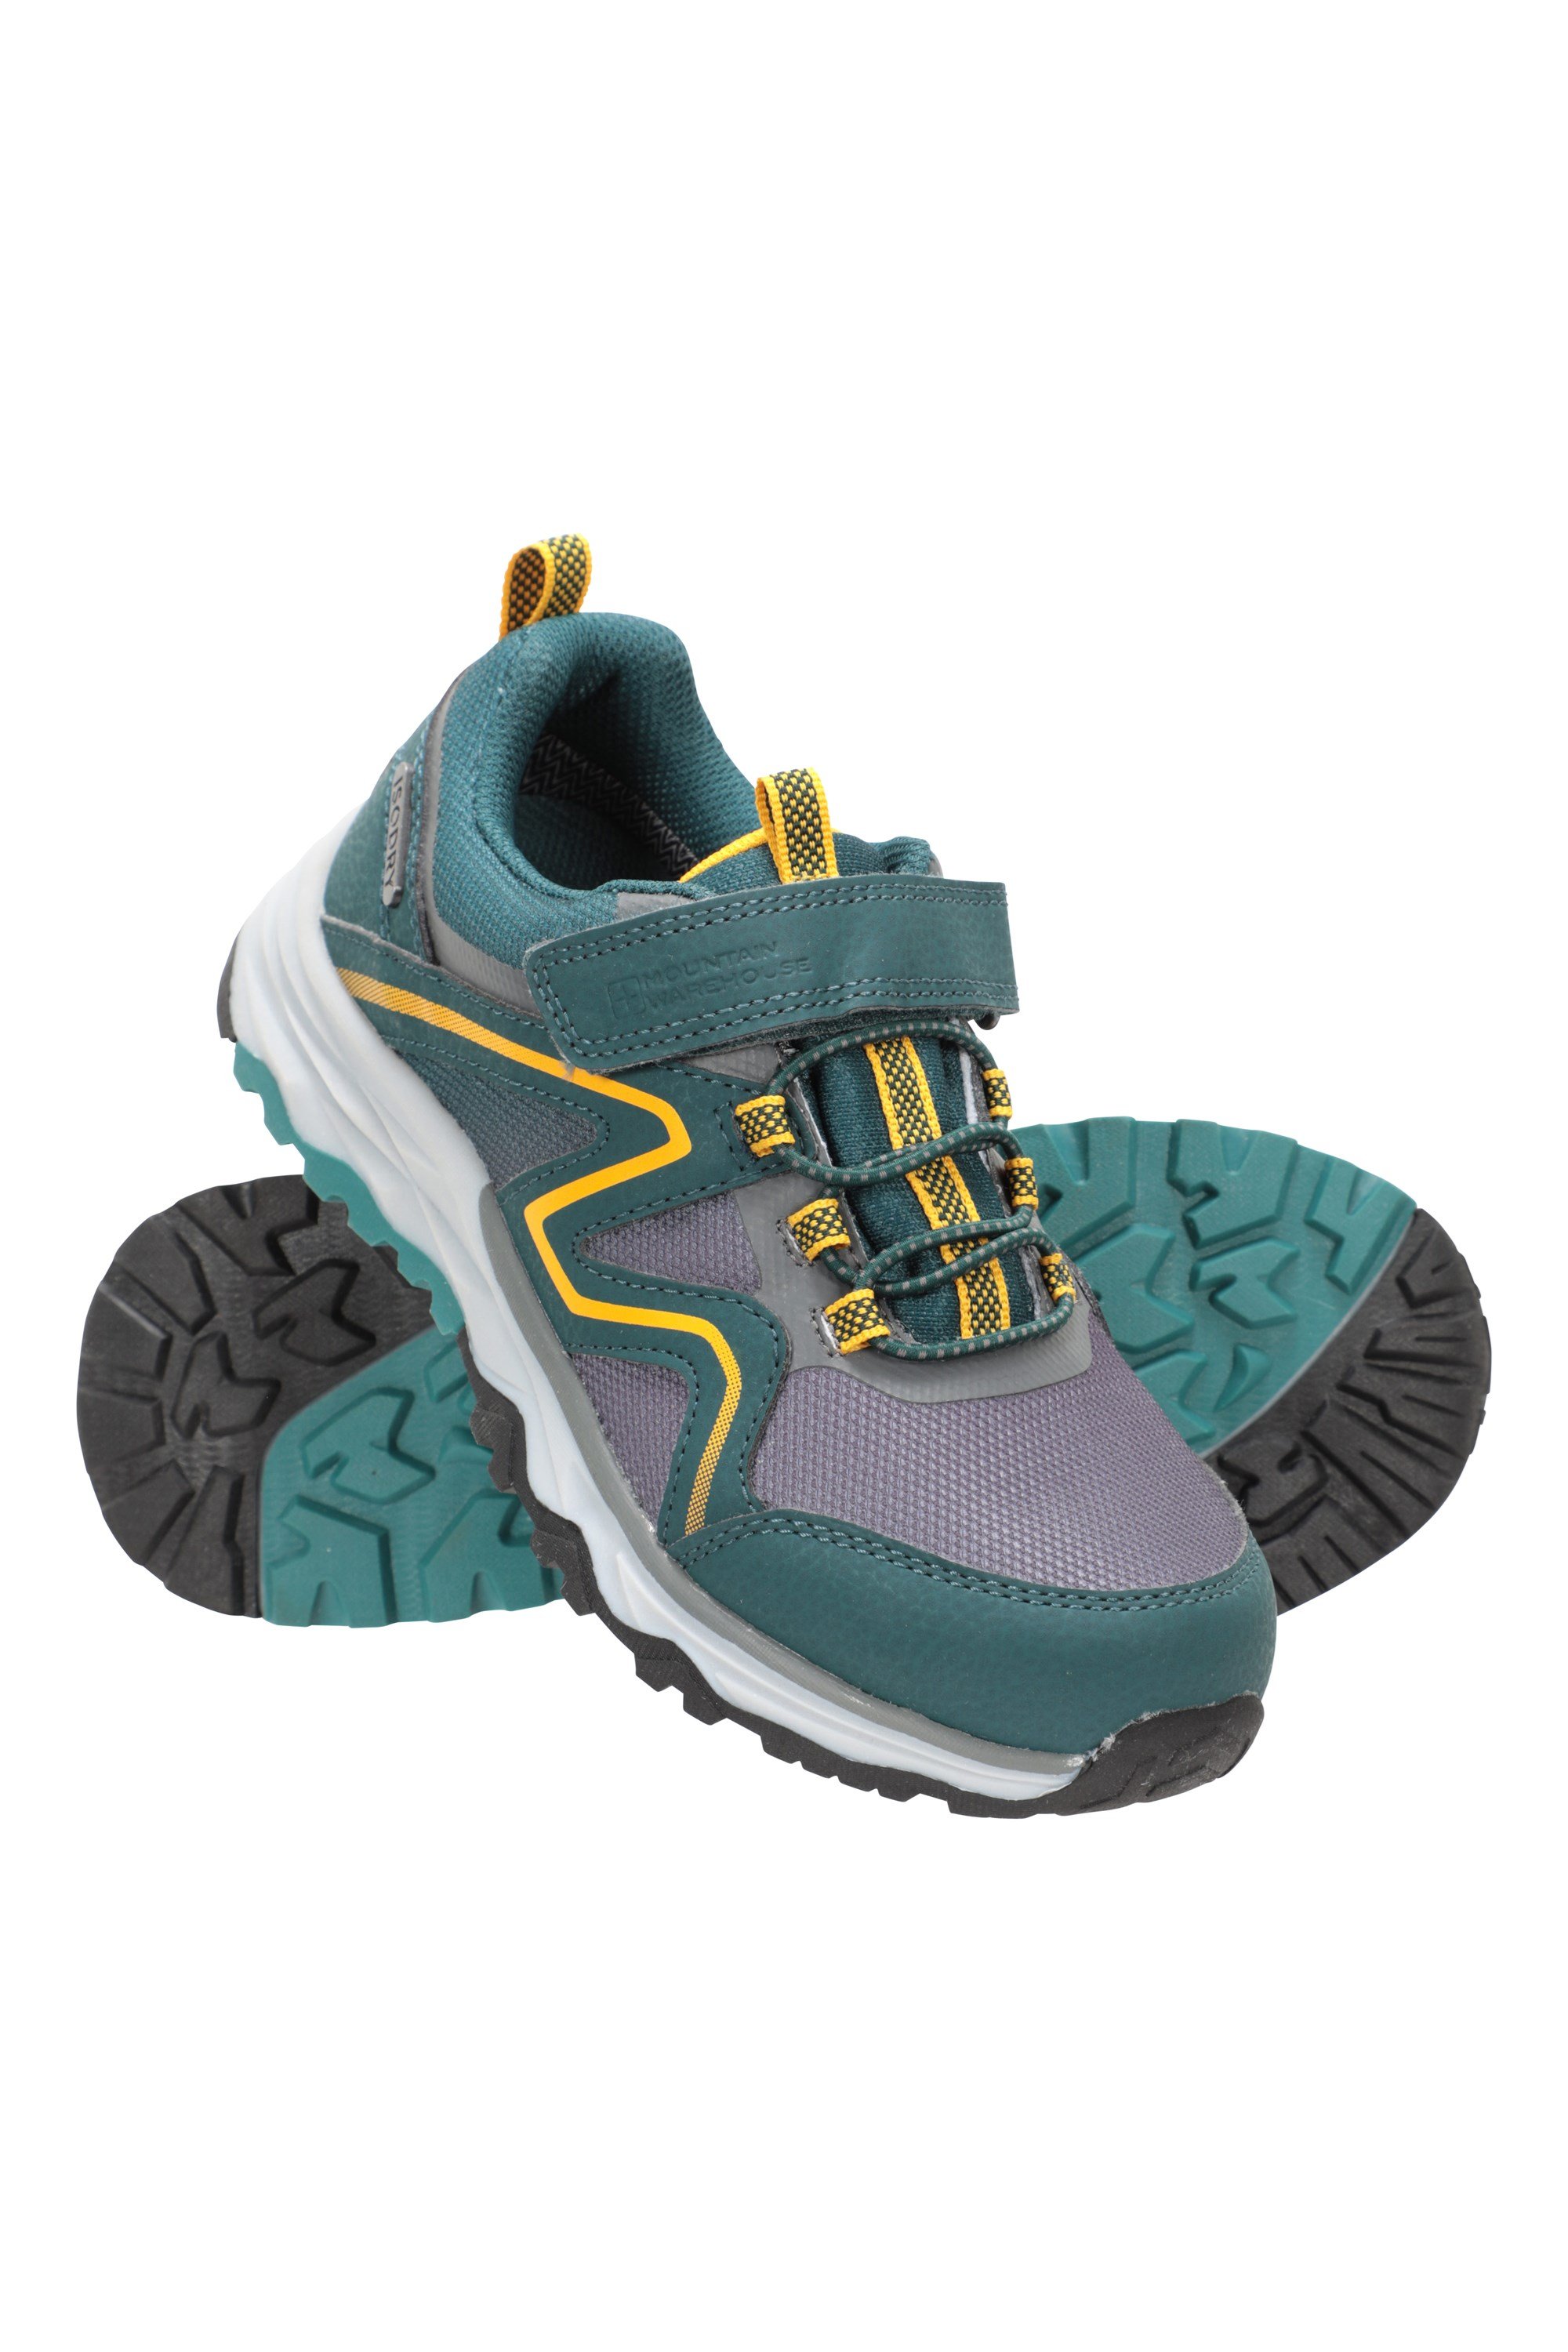 wasserfeste Trekkingschuhe Schuhe für Kinder aus Wildleder und Netzstoff Laufschuhe Mountain Warehouse Stampede Wanderschuhe für Kinder 